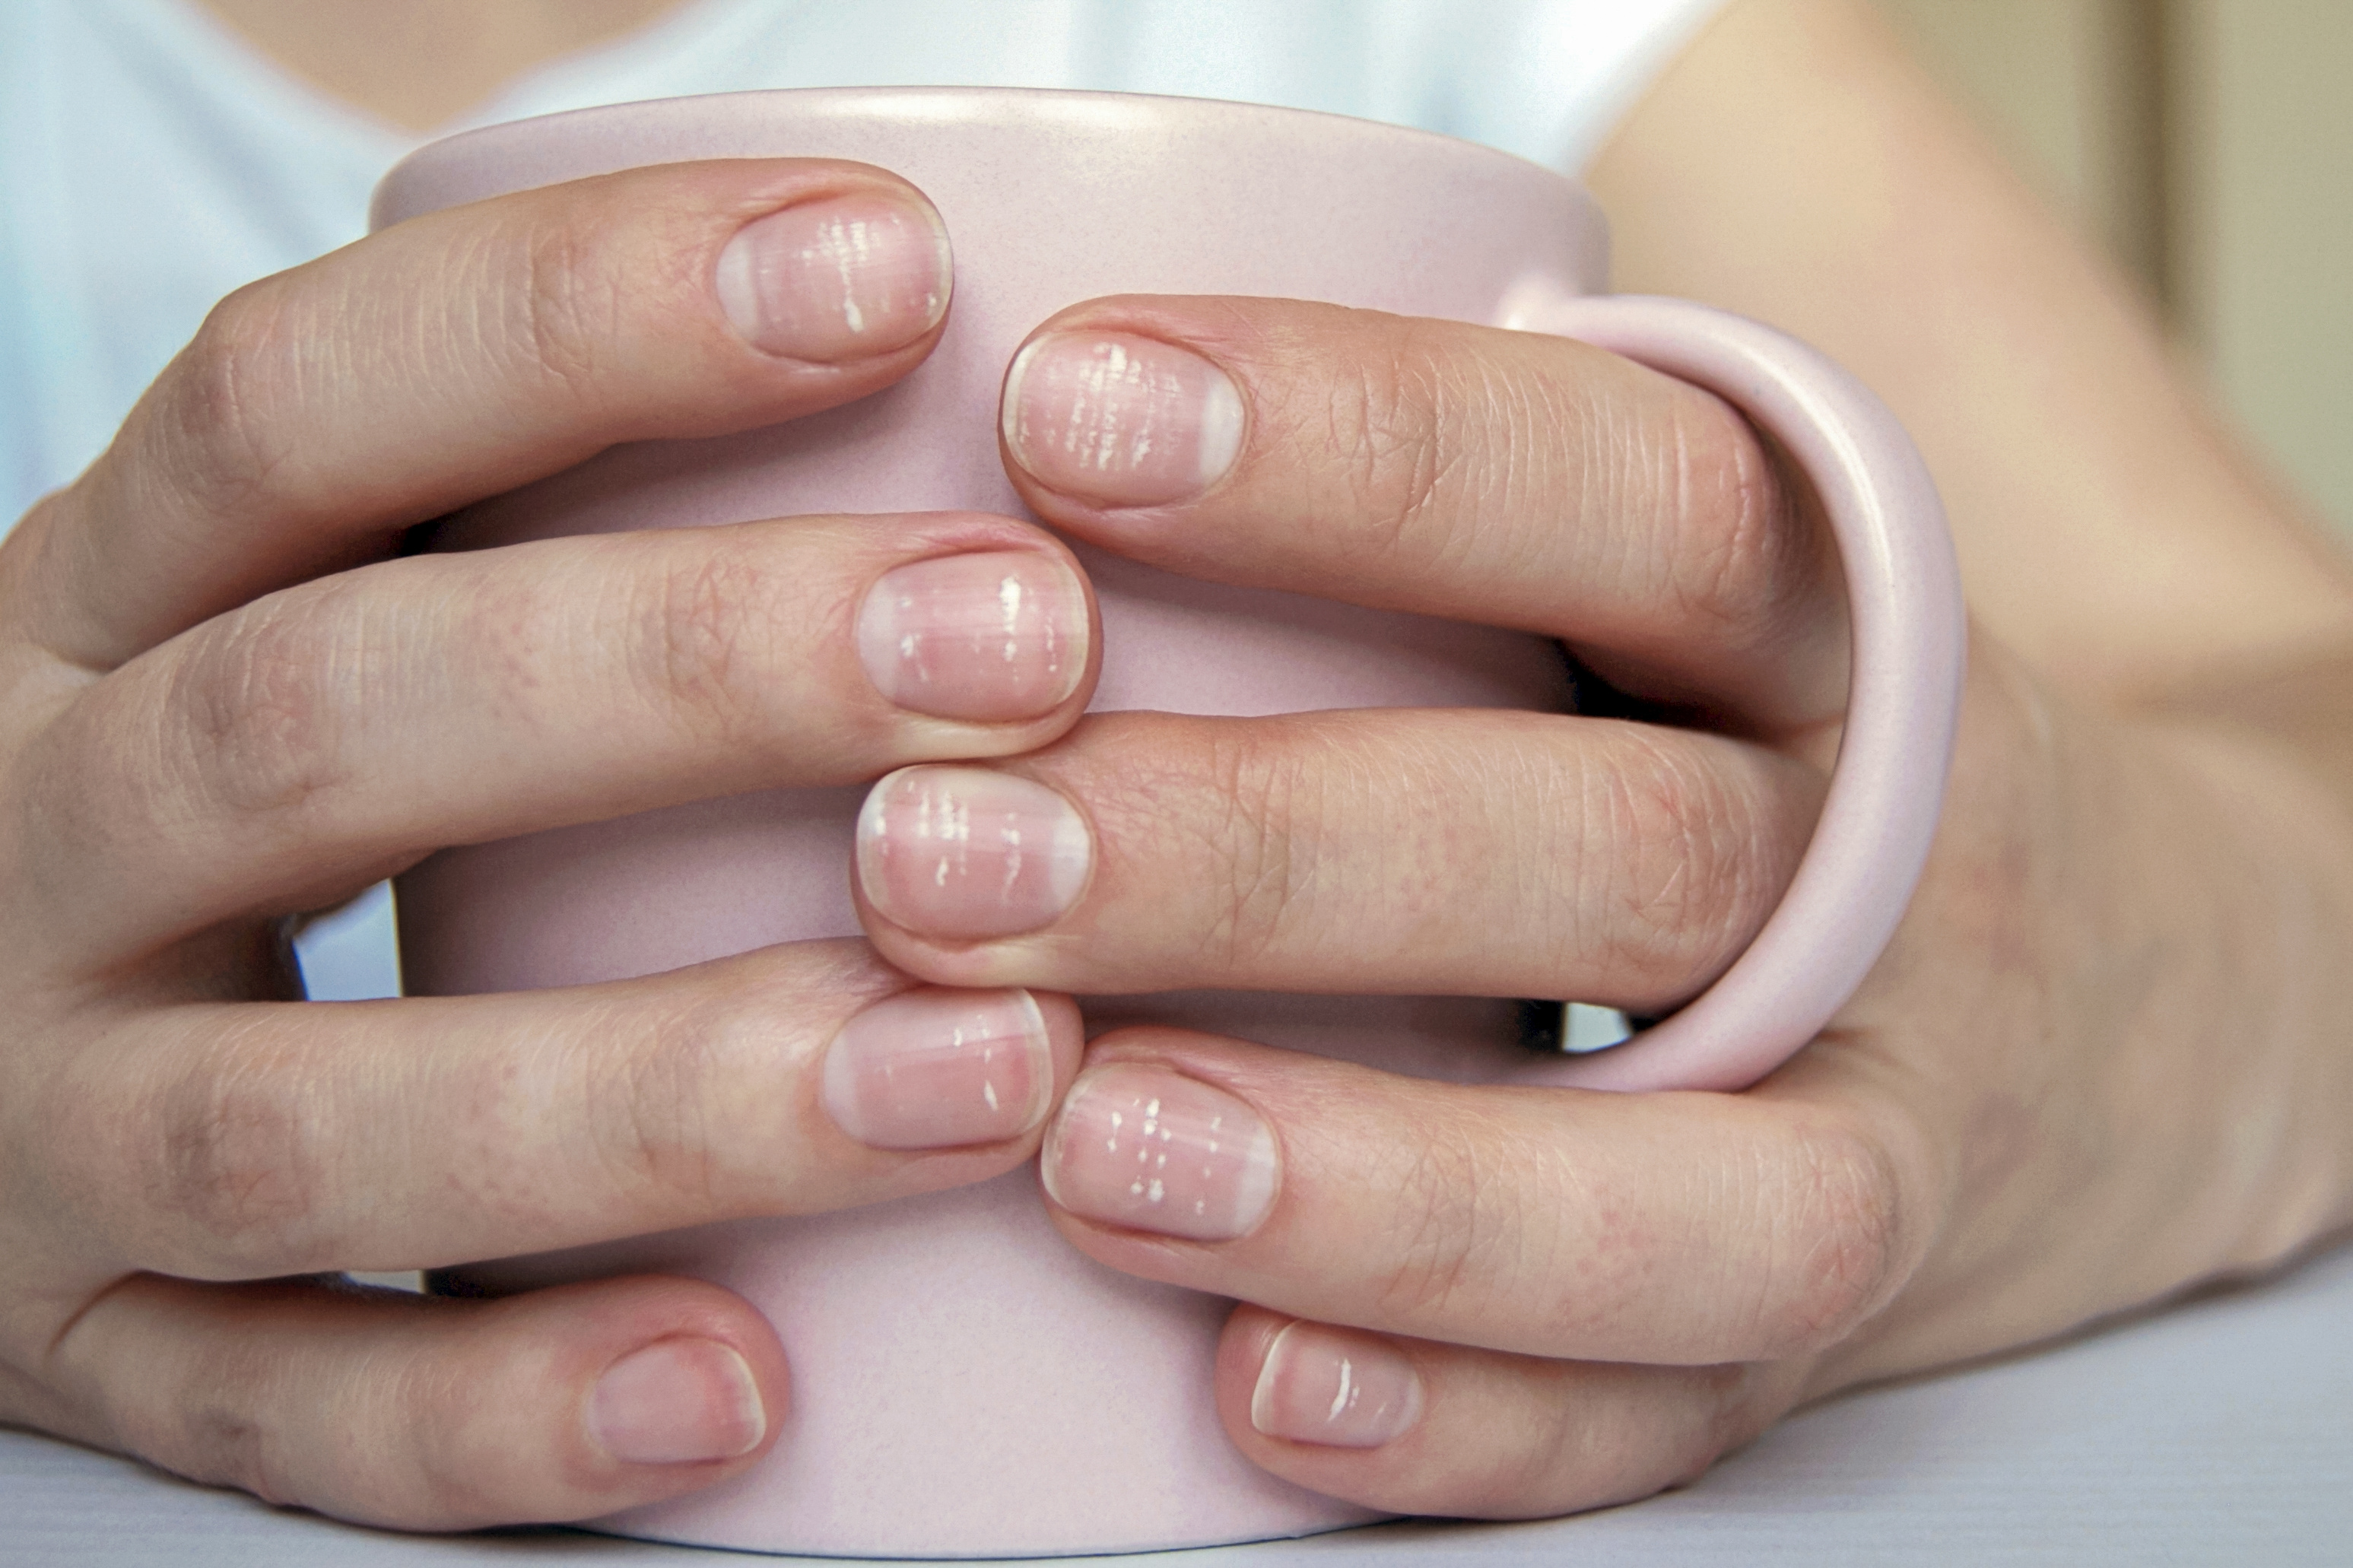 Gomba az ujjak között - hatékony kezelés fényképpel